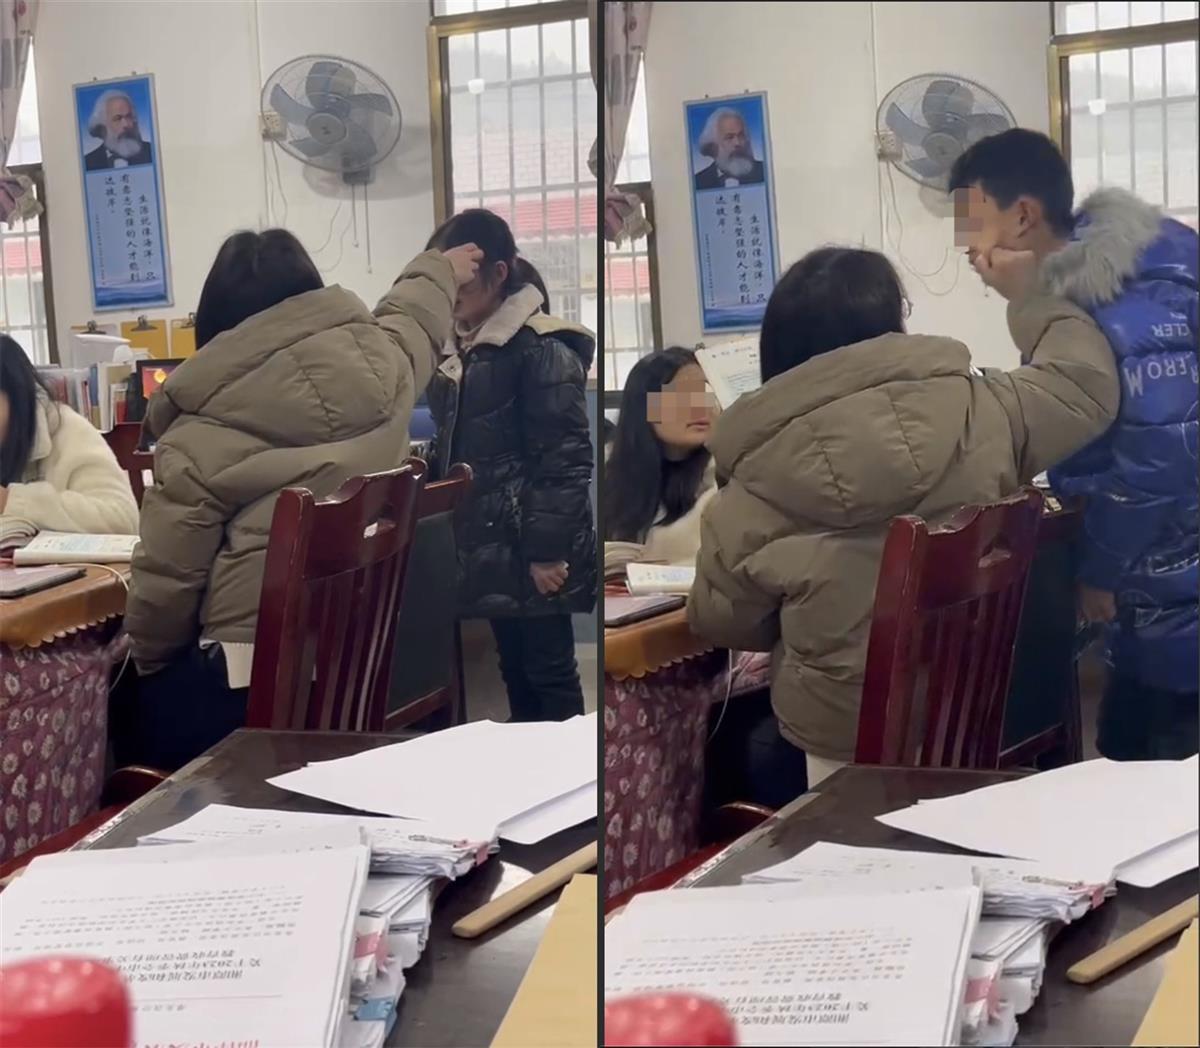 湘潭一教师粗暴对待学生被停职调查, 要从严追责, 更要匡正校园风气